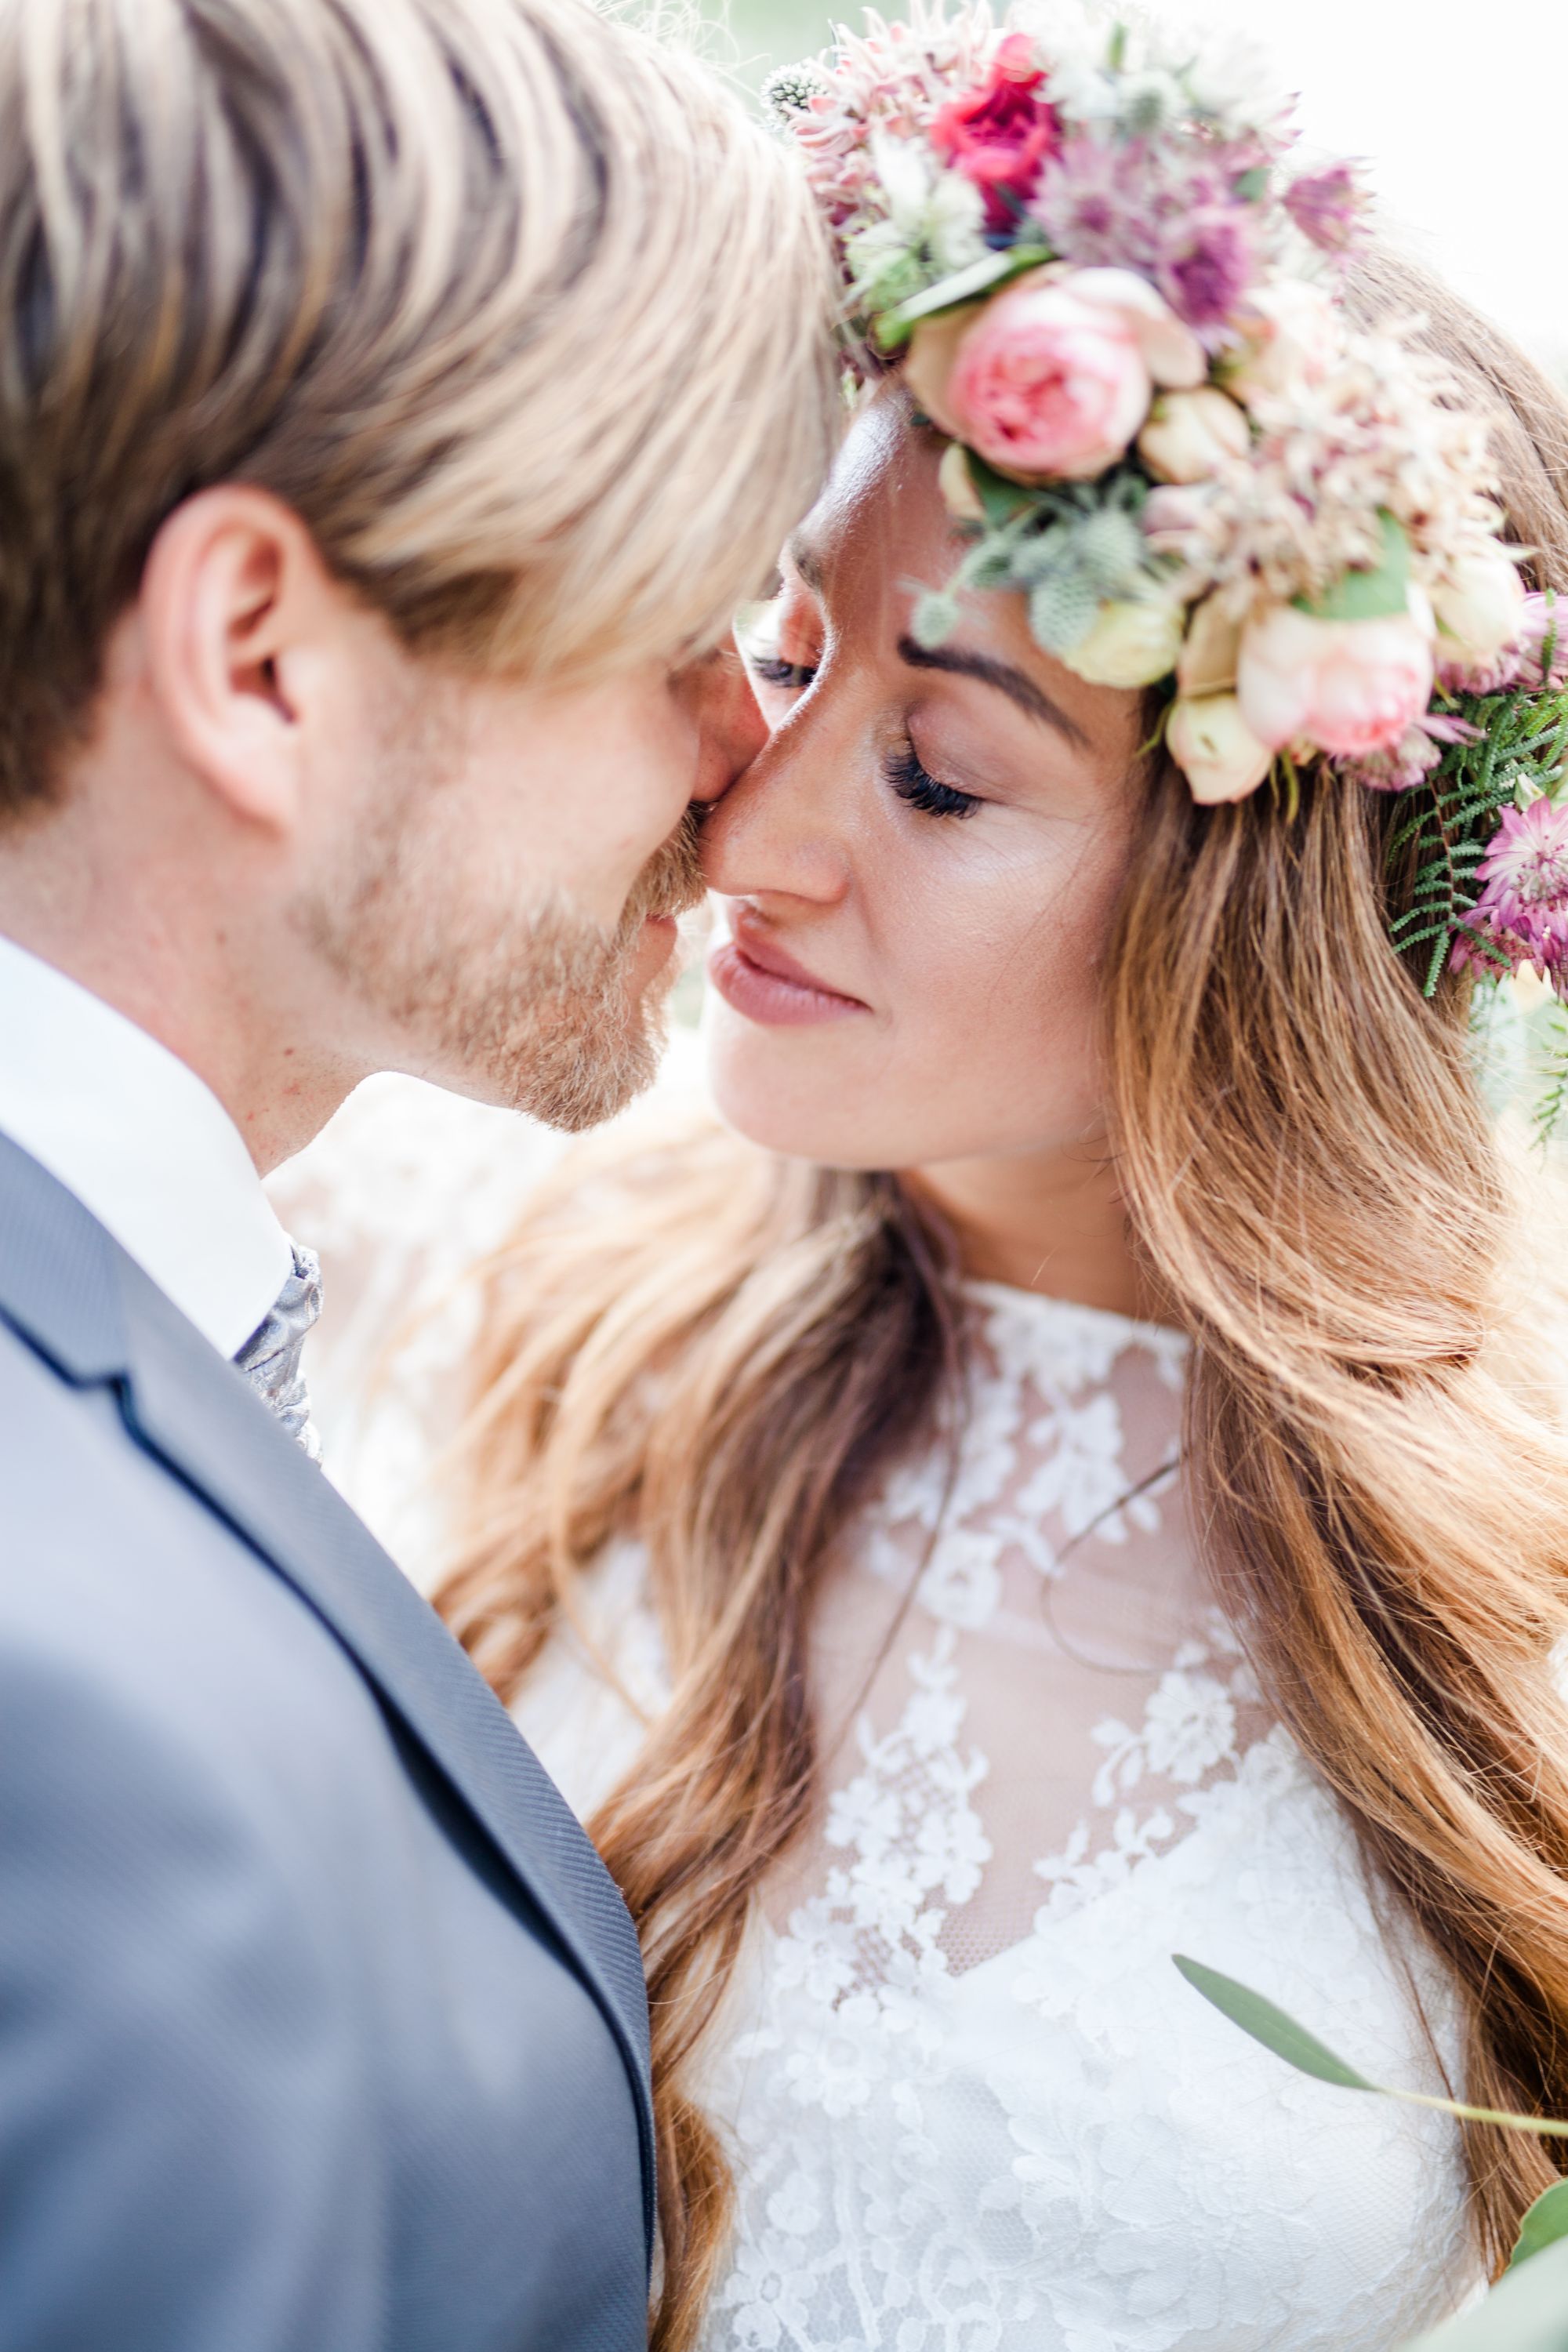 Eine Braut und ein Bräutigam küssen sich vor einer Blumenkrone.